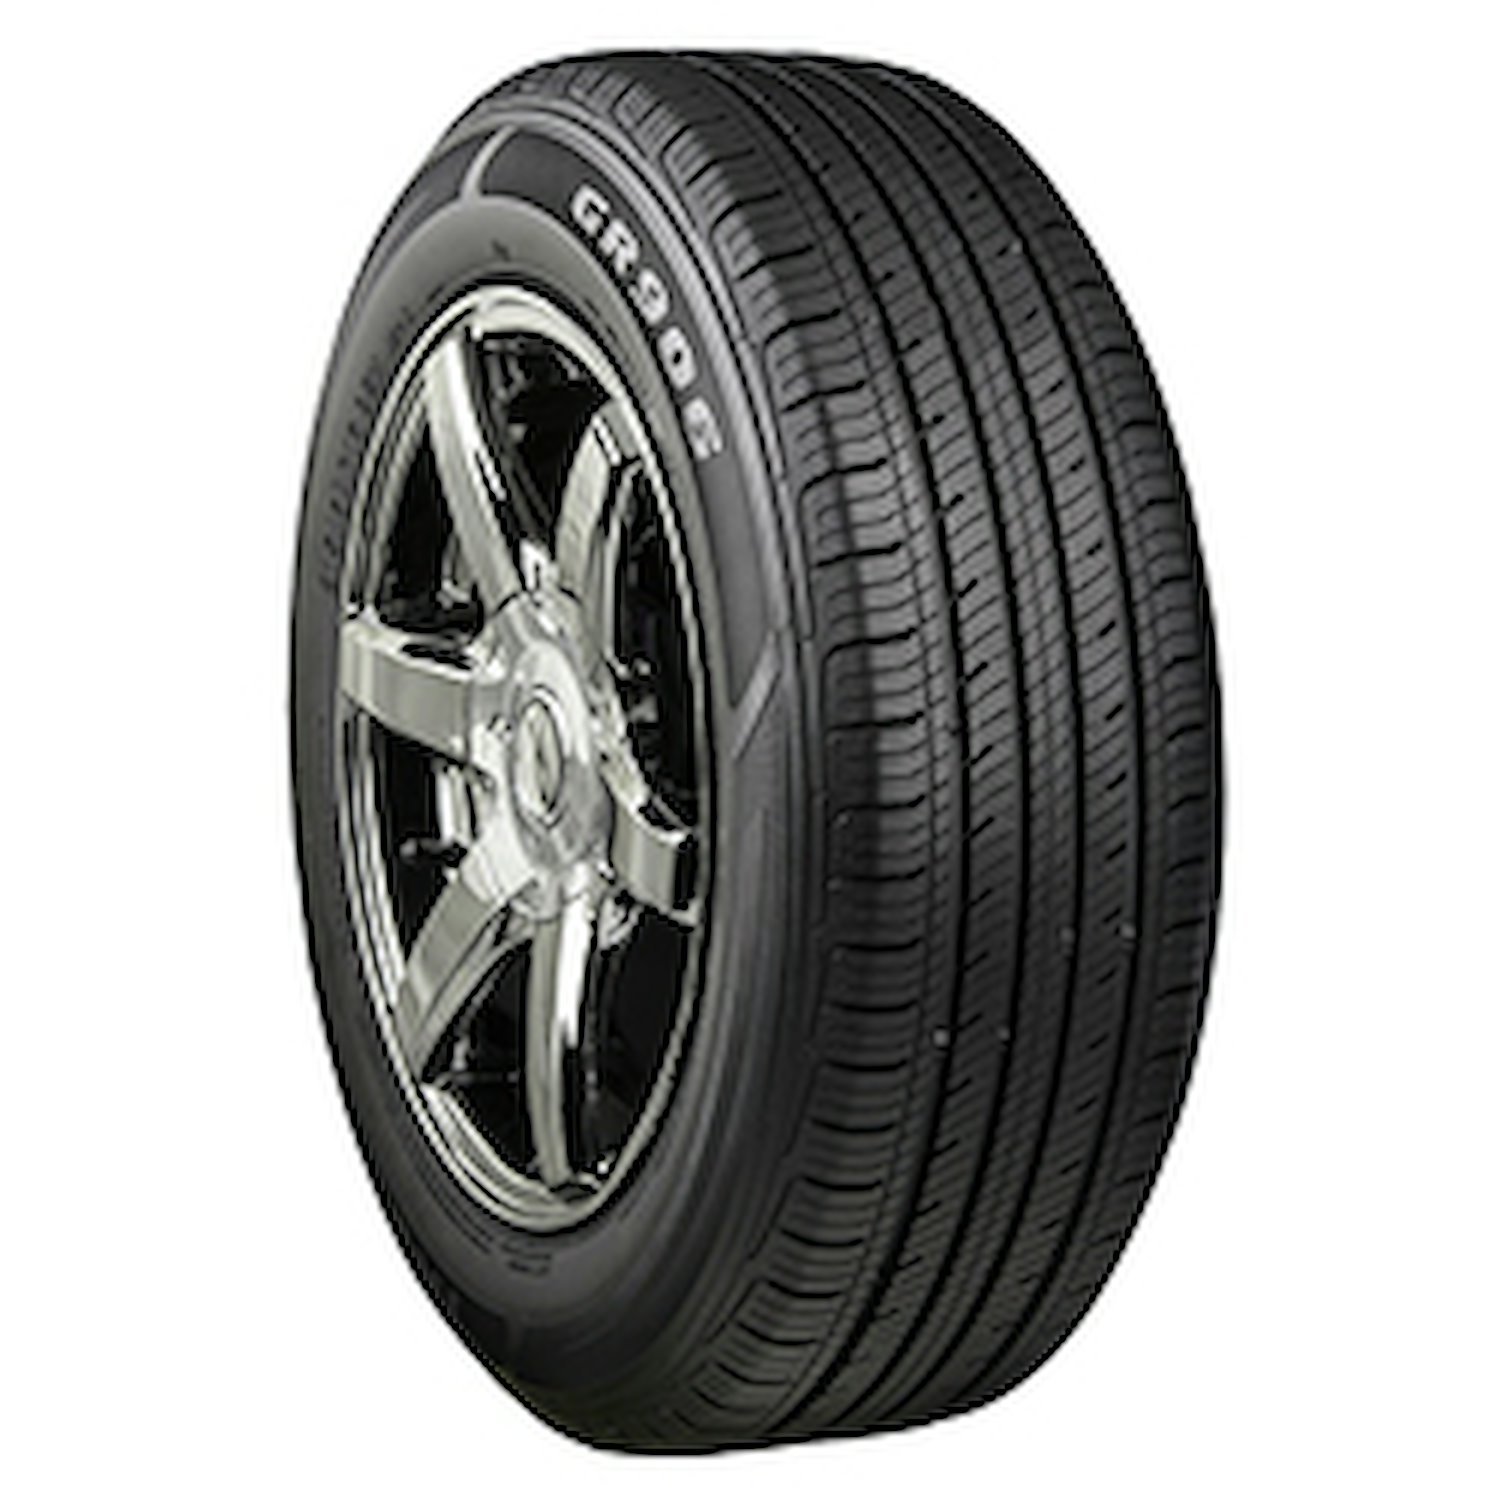 GR906 Tire, 215/65R15 96H